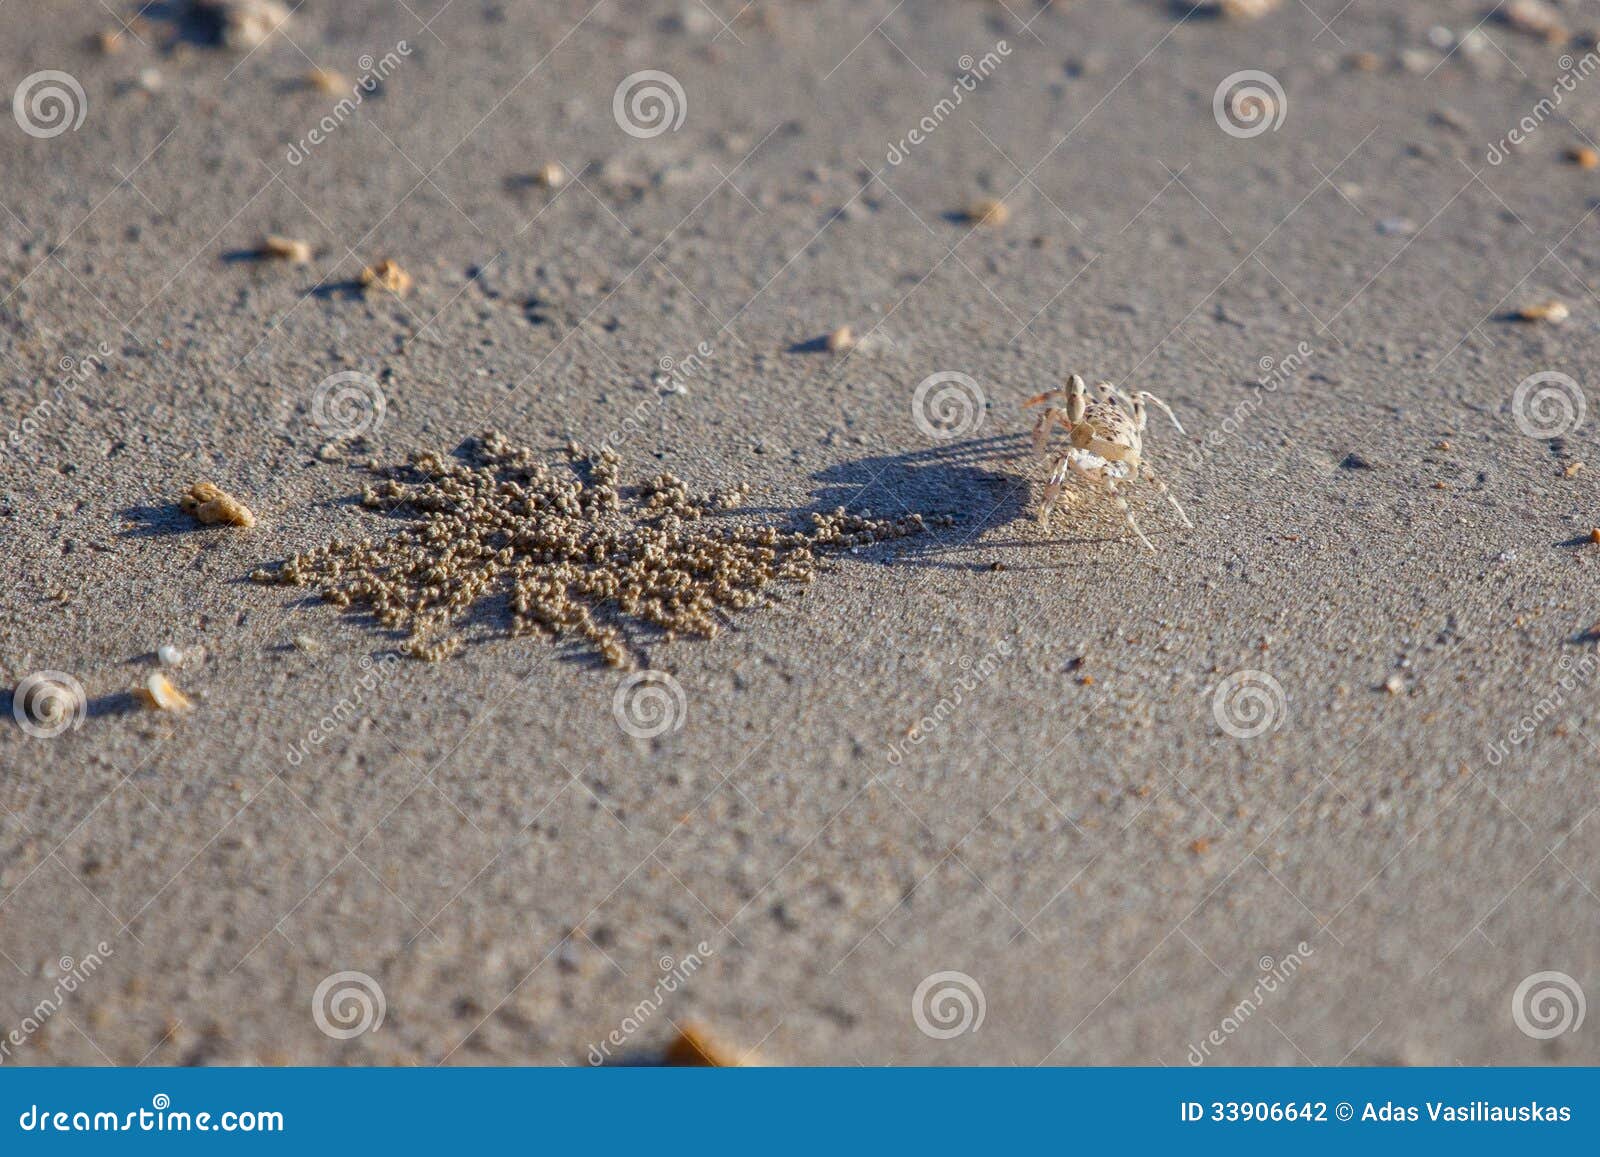 Маленькая песчинка. Рачки в песке. Маленькие песчаные Крабы. Маленький краб на песке. Краб живет в песке.